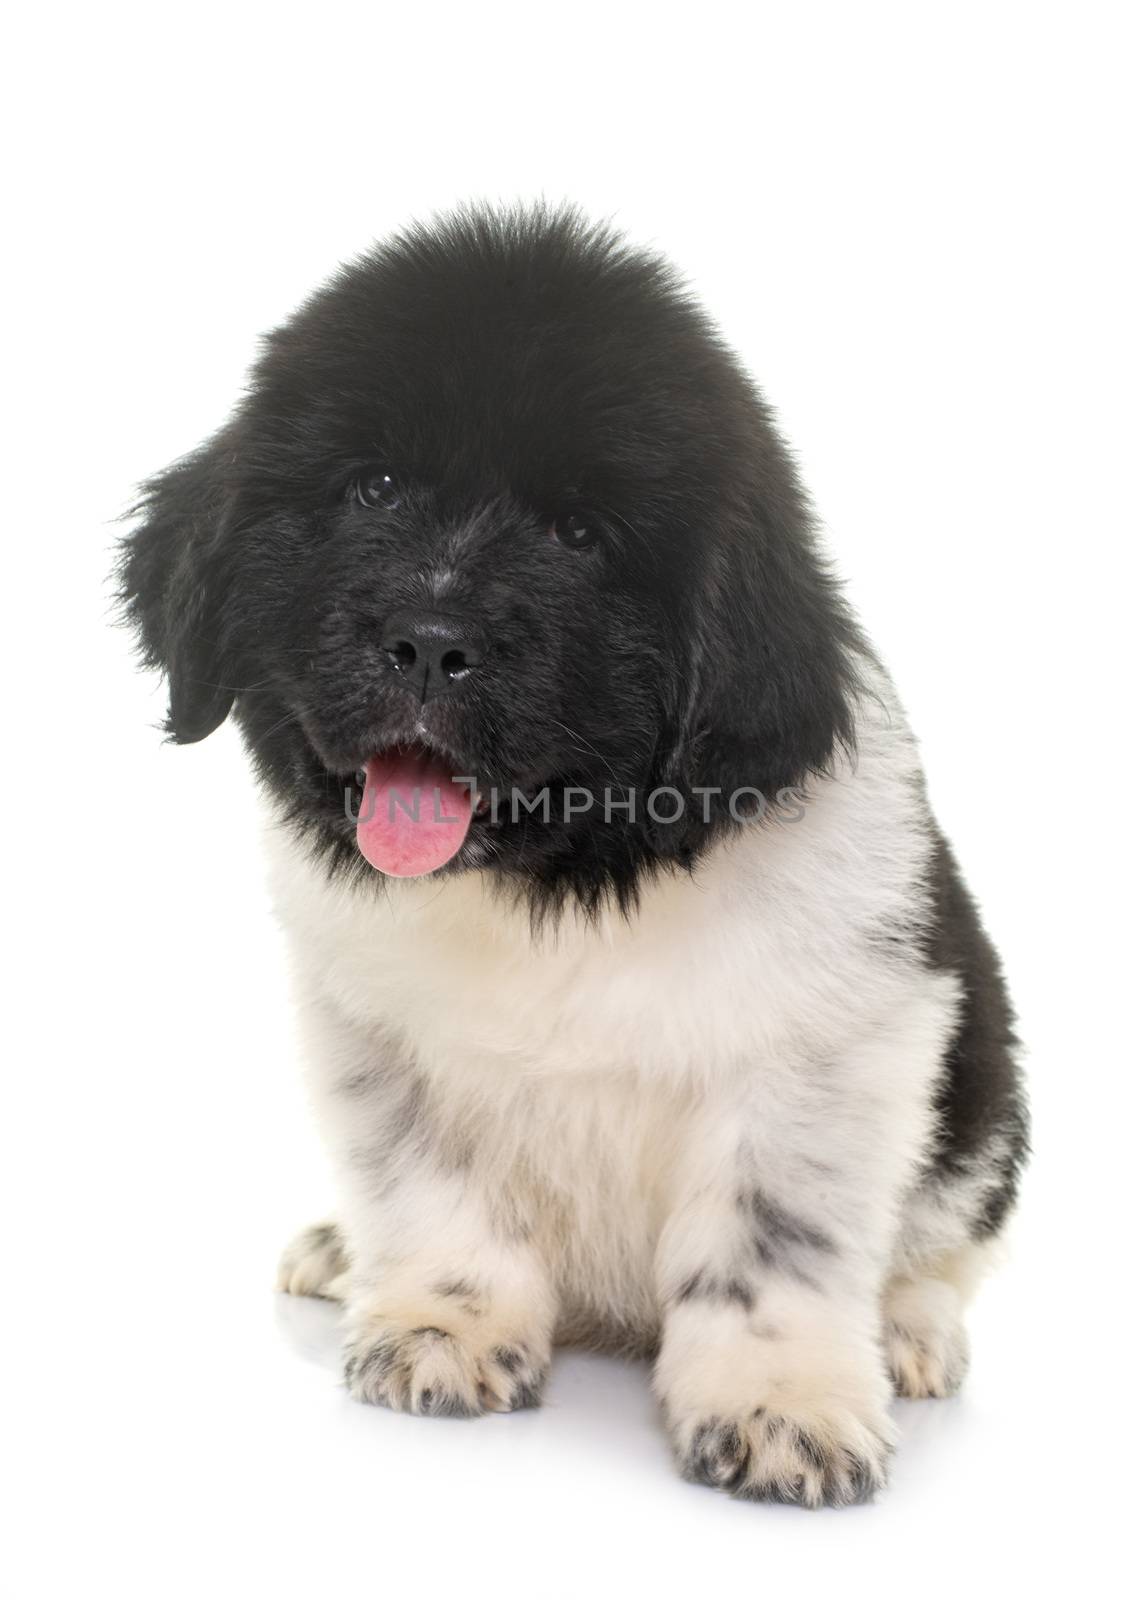 black and white puppy newfoundland dog by cynoclub